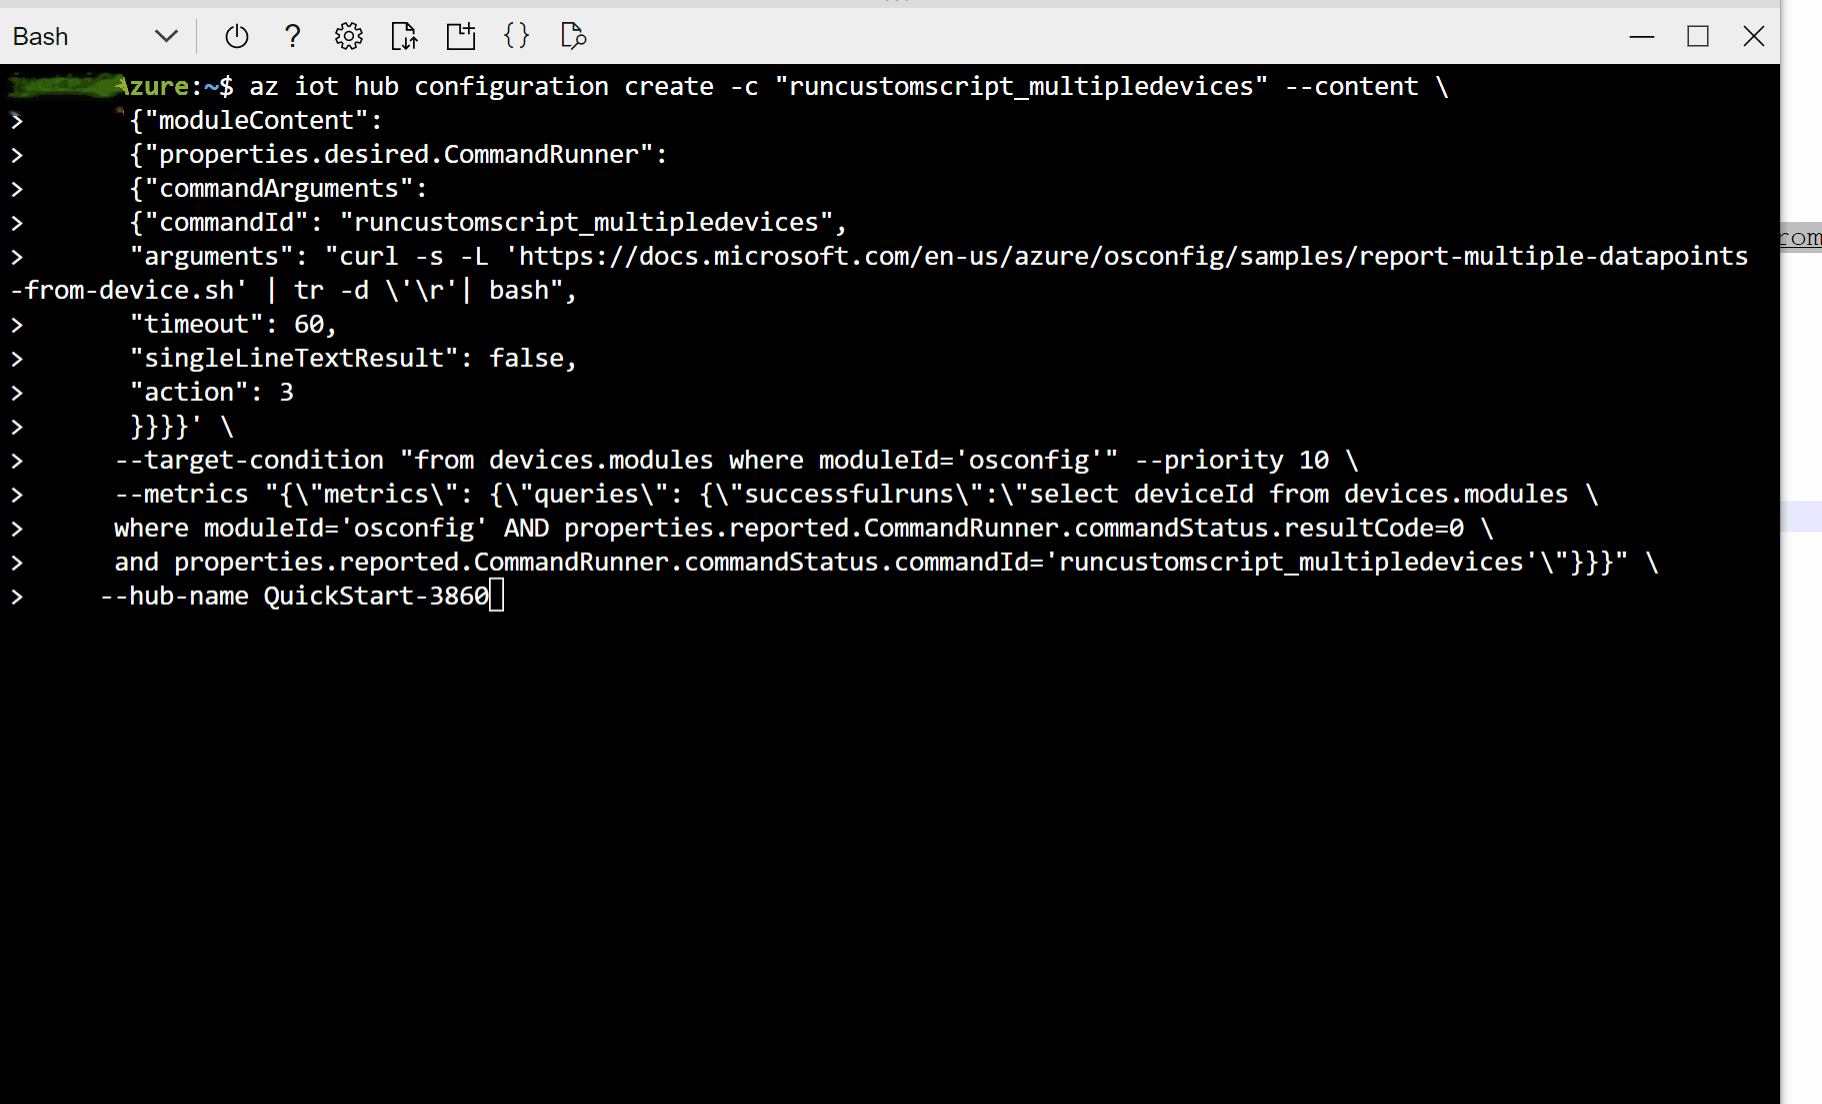 Captura de tela que mostra como criar uma configuração para baixar e executar um script personalizado em uma frota de dispositivos usando bash